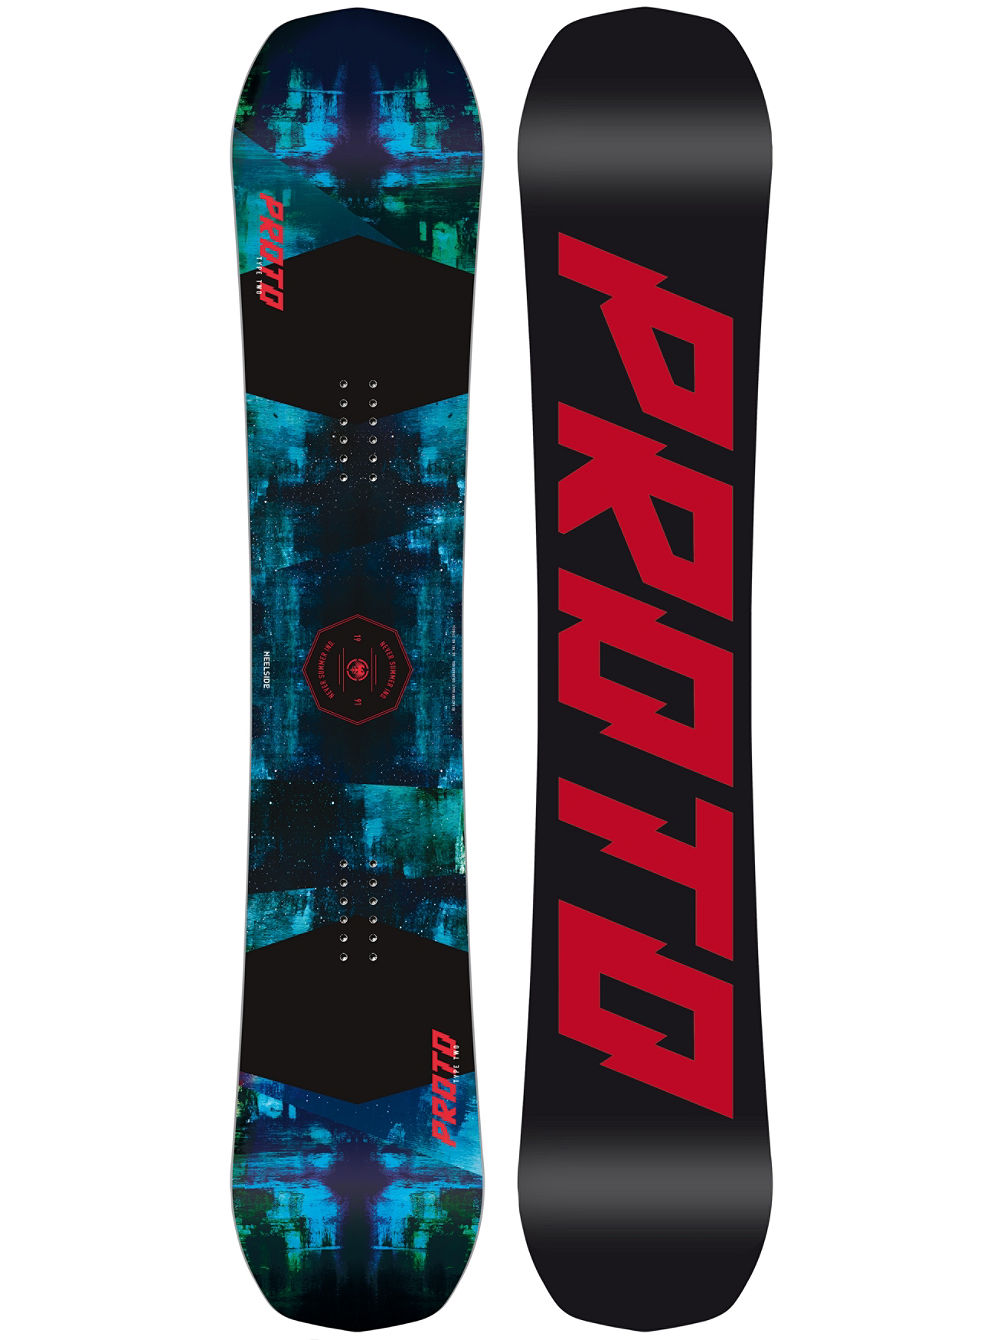 Proto Type Two 160 2019 Snowboard